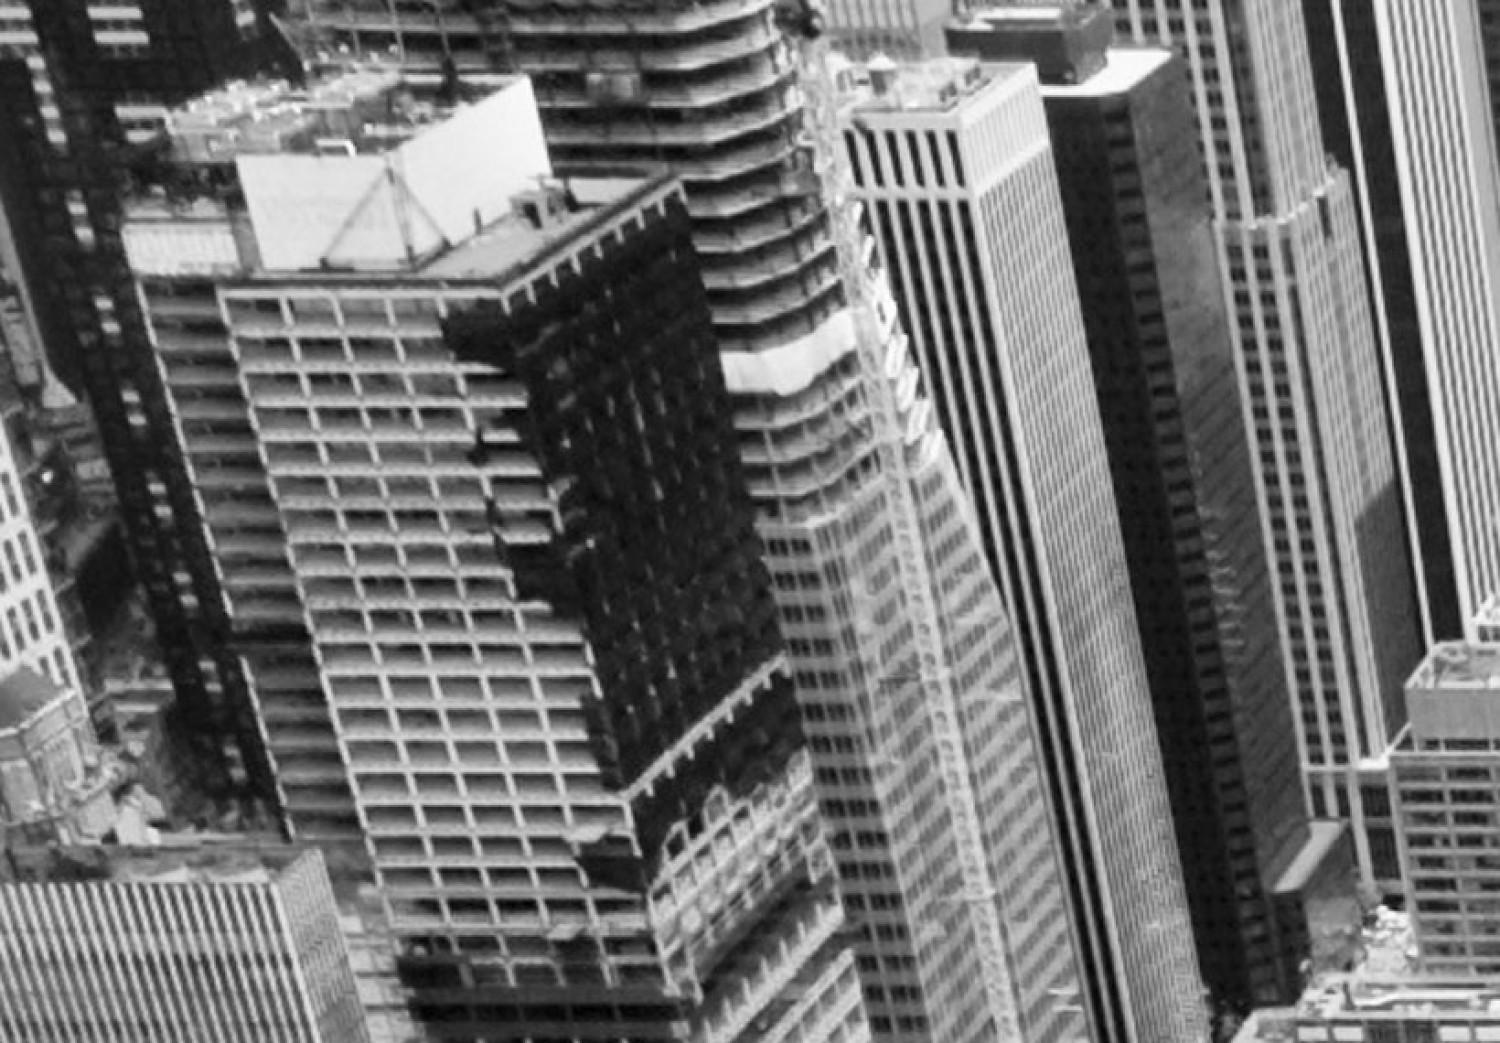 Cuadro Rascacielos en Nueva York